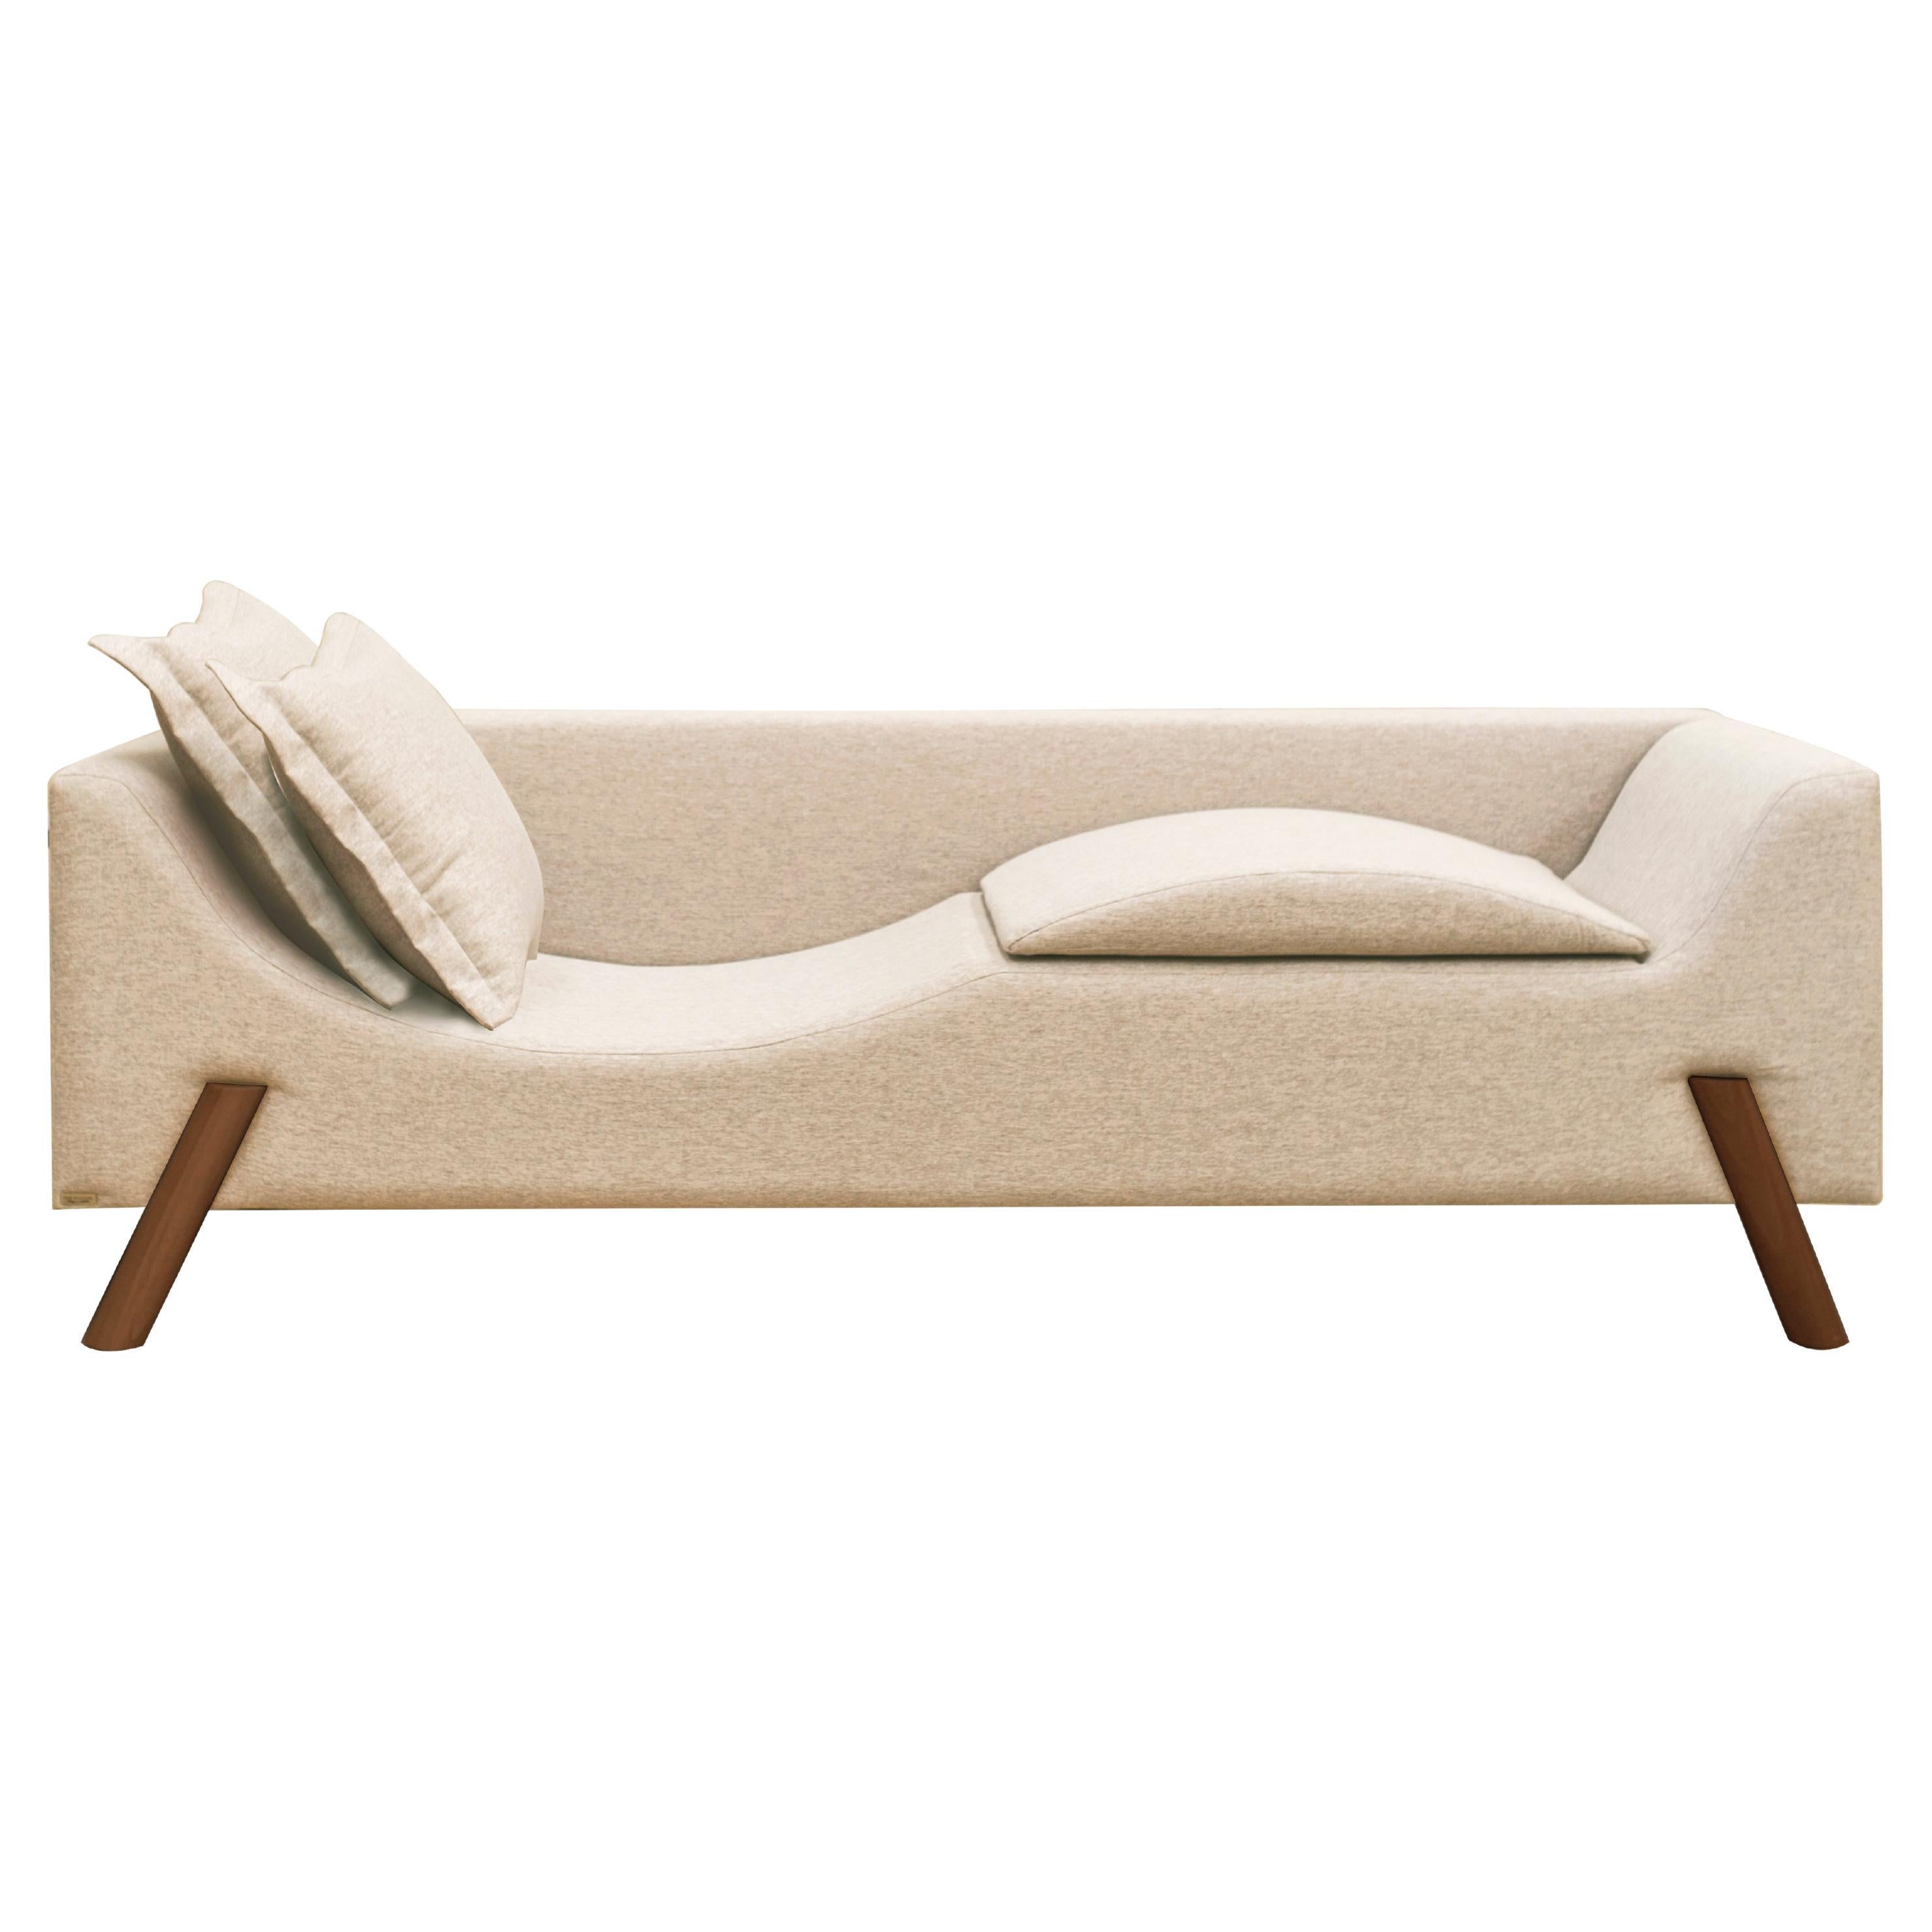 Die Flag Couch ist ein intelligentes und multifunktionales Möbelstück.
Die Couch hat ein in die Sitzfläche integriertes Kissen, das ihr eine Doppelfunktion verleiht: Im geschlossenen Zustand dient sie als bequemes Wohnsofa, im geöffneten Zustand